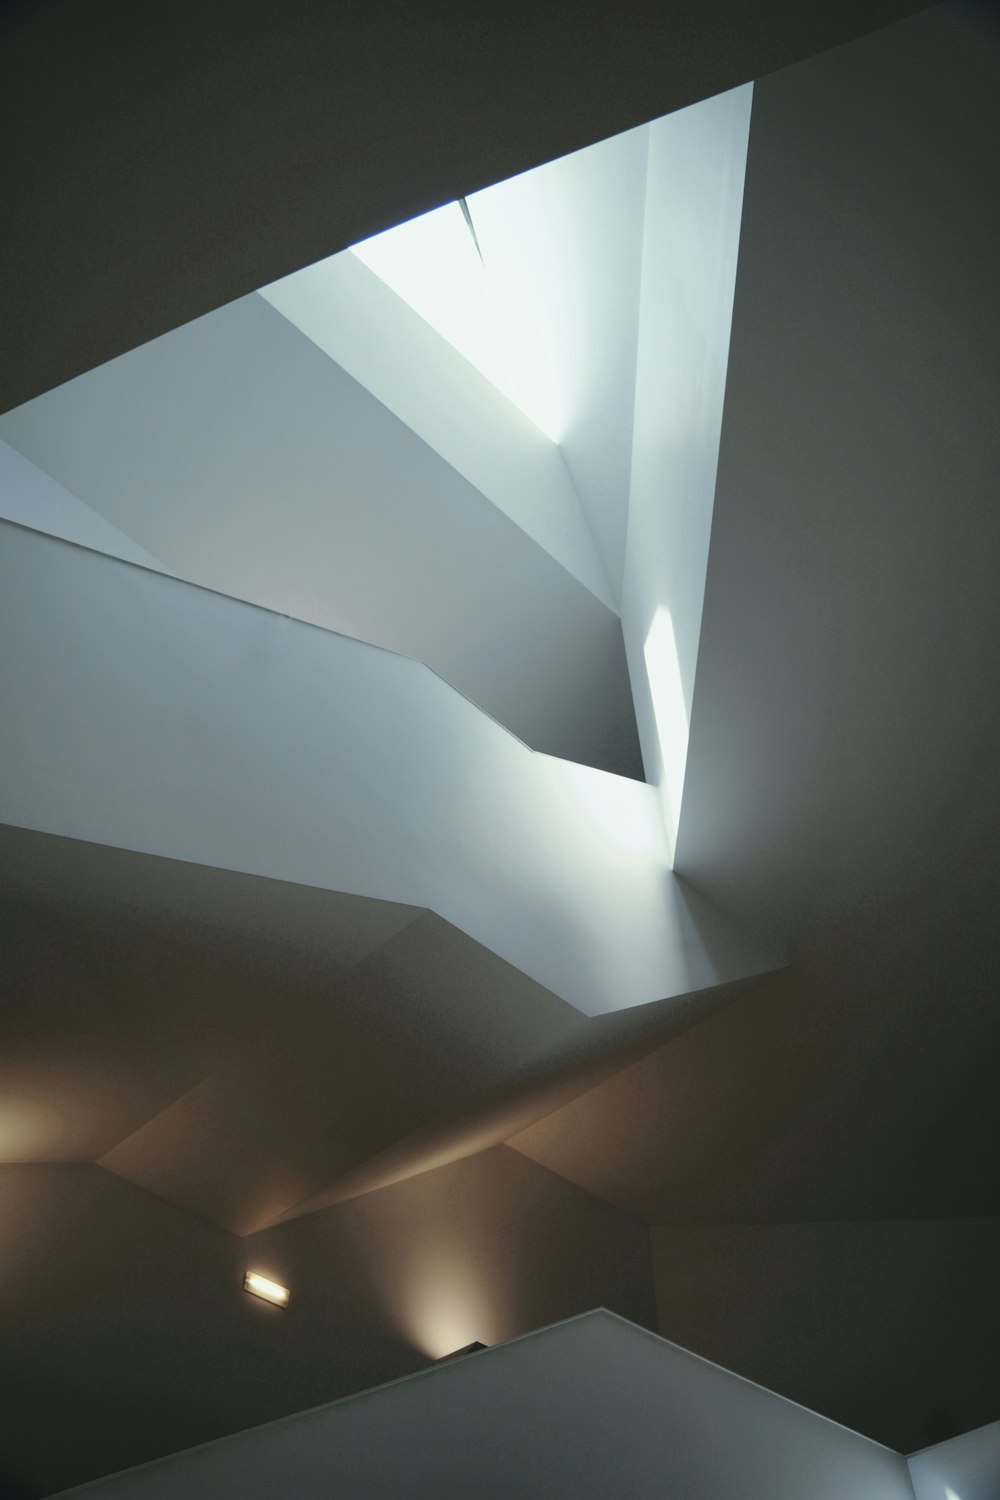 Una habitación con un techo que tiene una luz que viene de ella